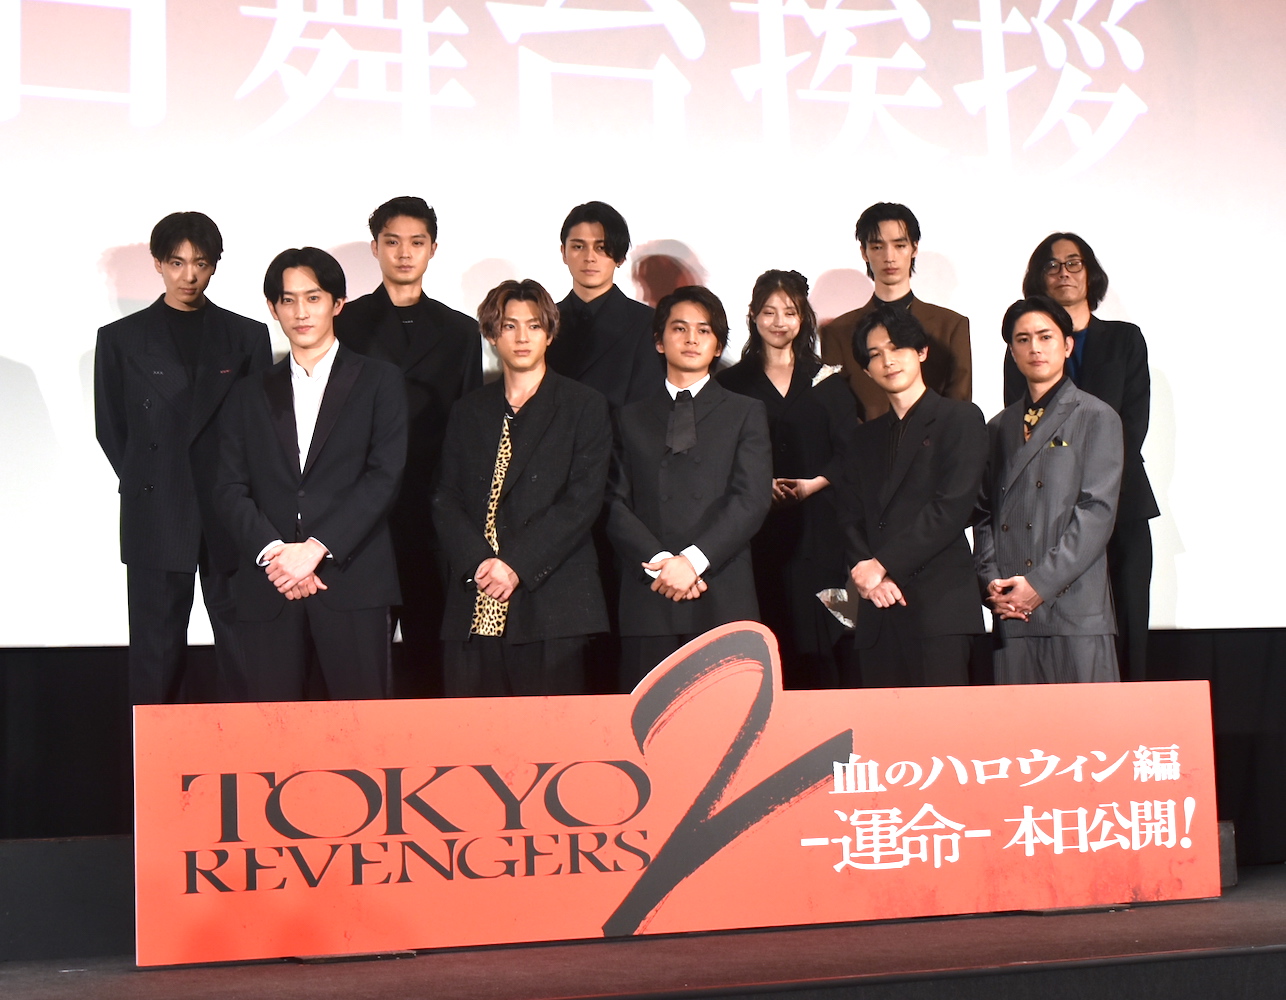 映画『東京リベンジャーズ2 血のハロウィン編 -運命-』初日舞台挨拶にて。若手人気俳優達が堂々集結した